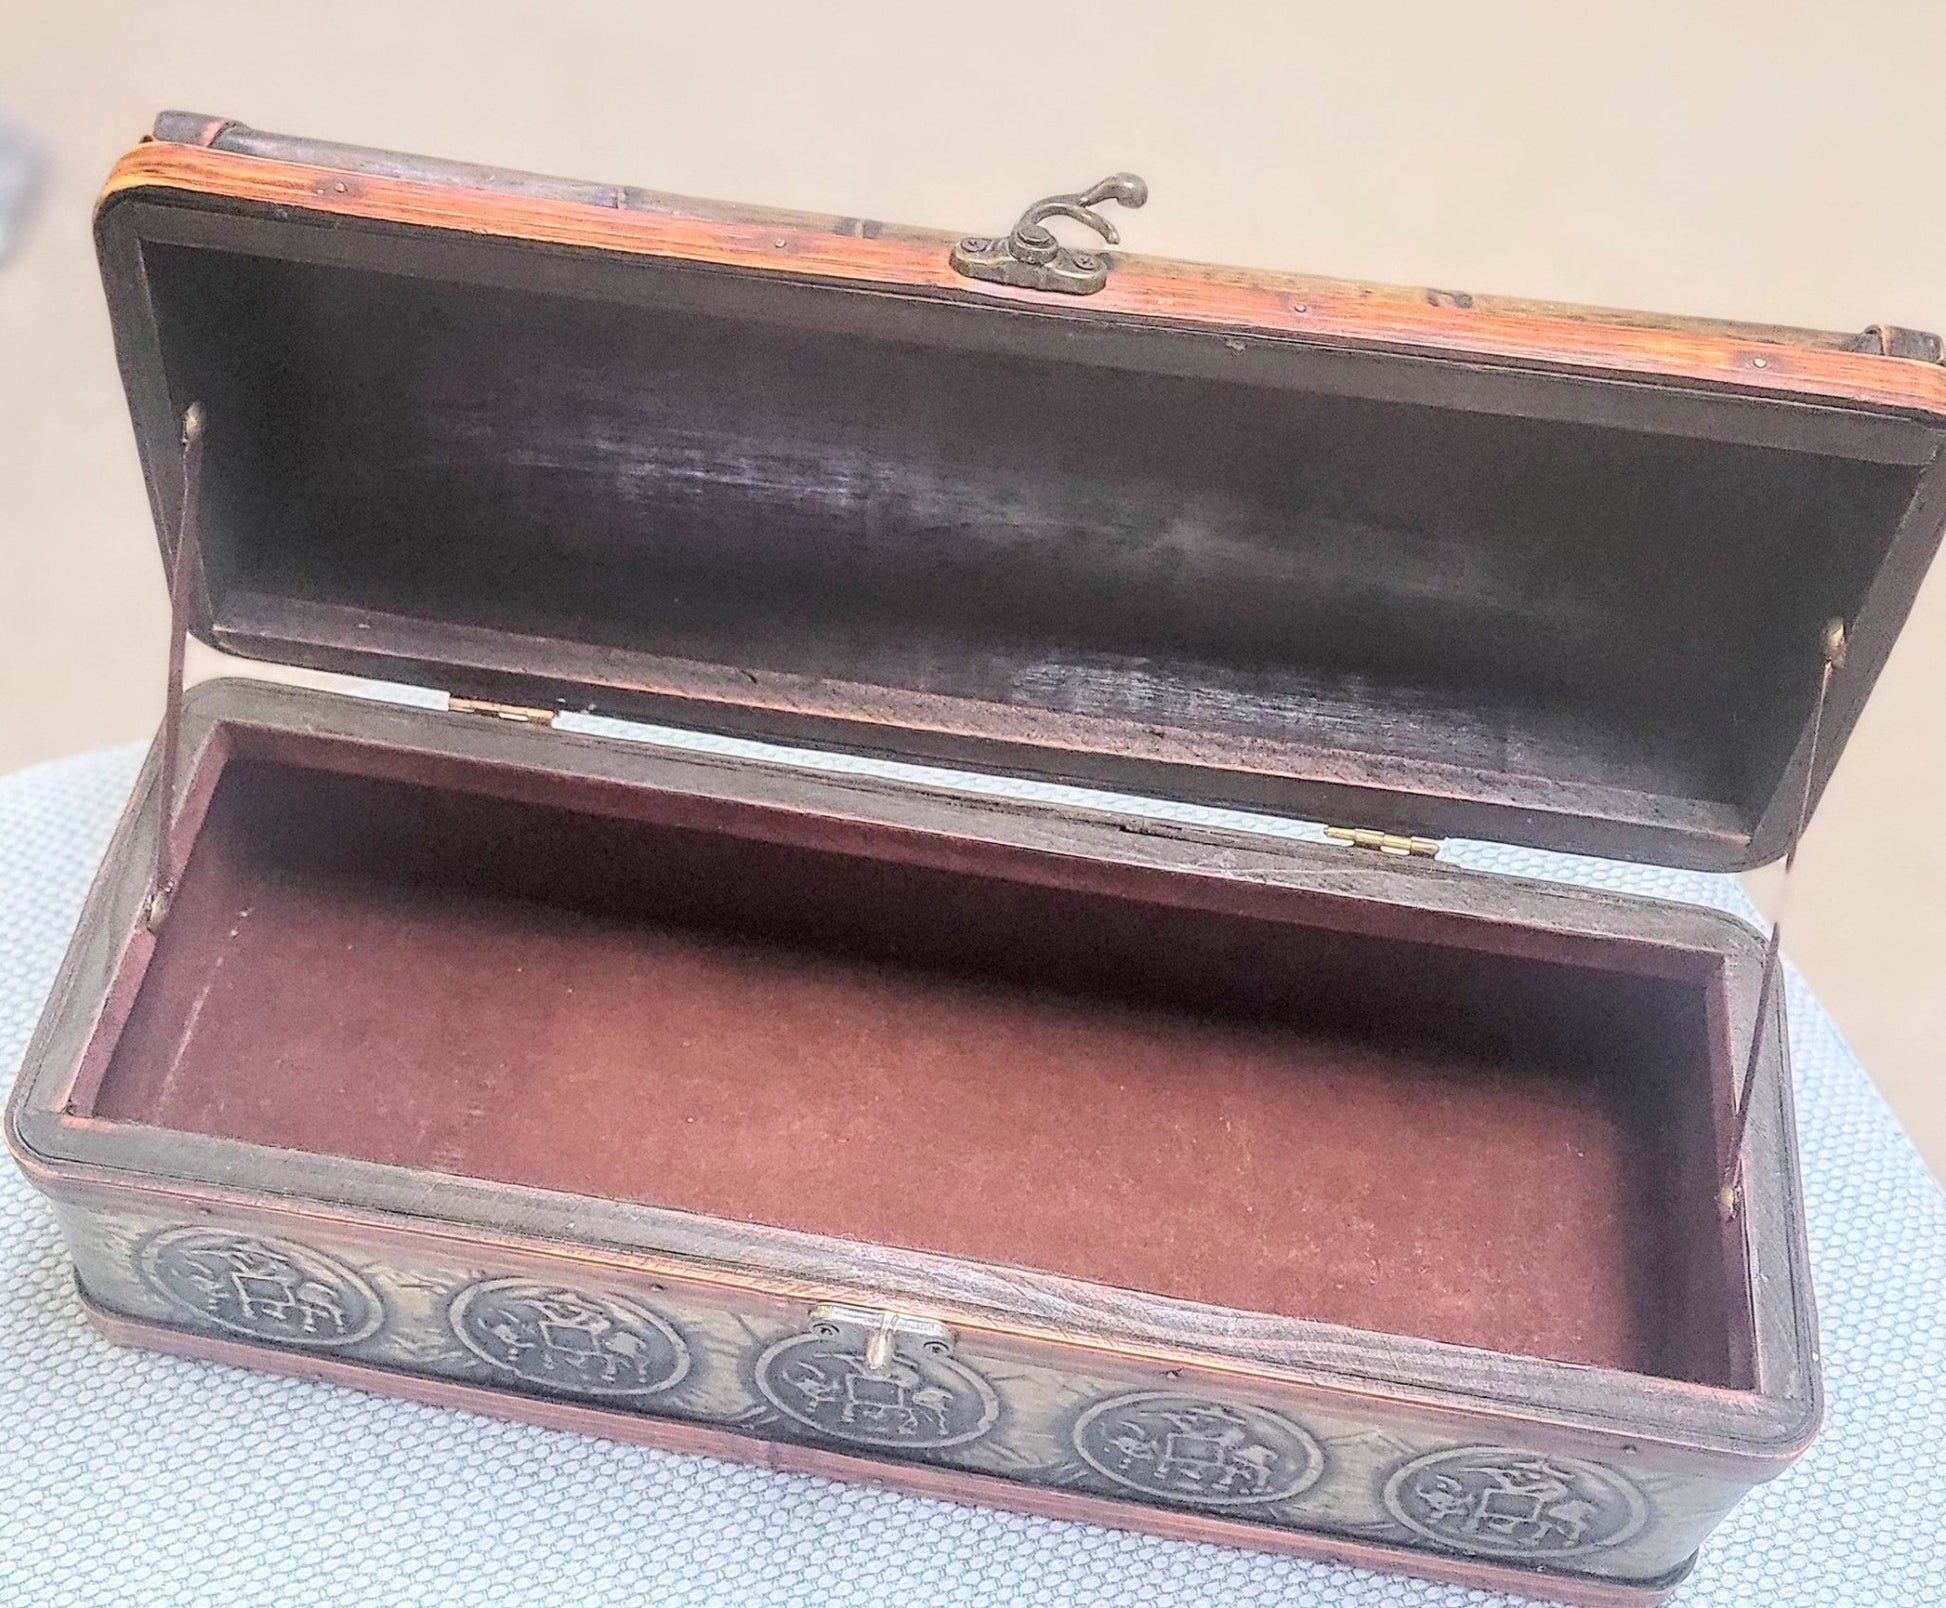 Chinese Amulet Treasure Box - Smash's Stashes